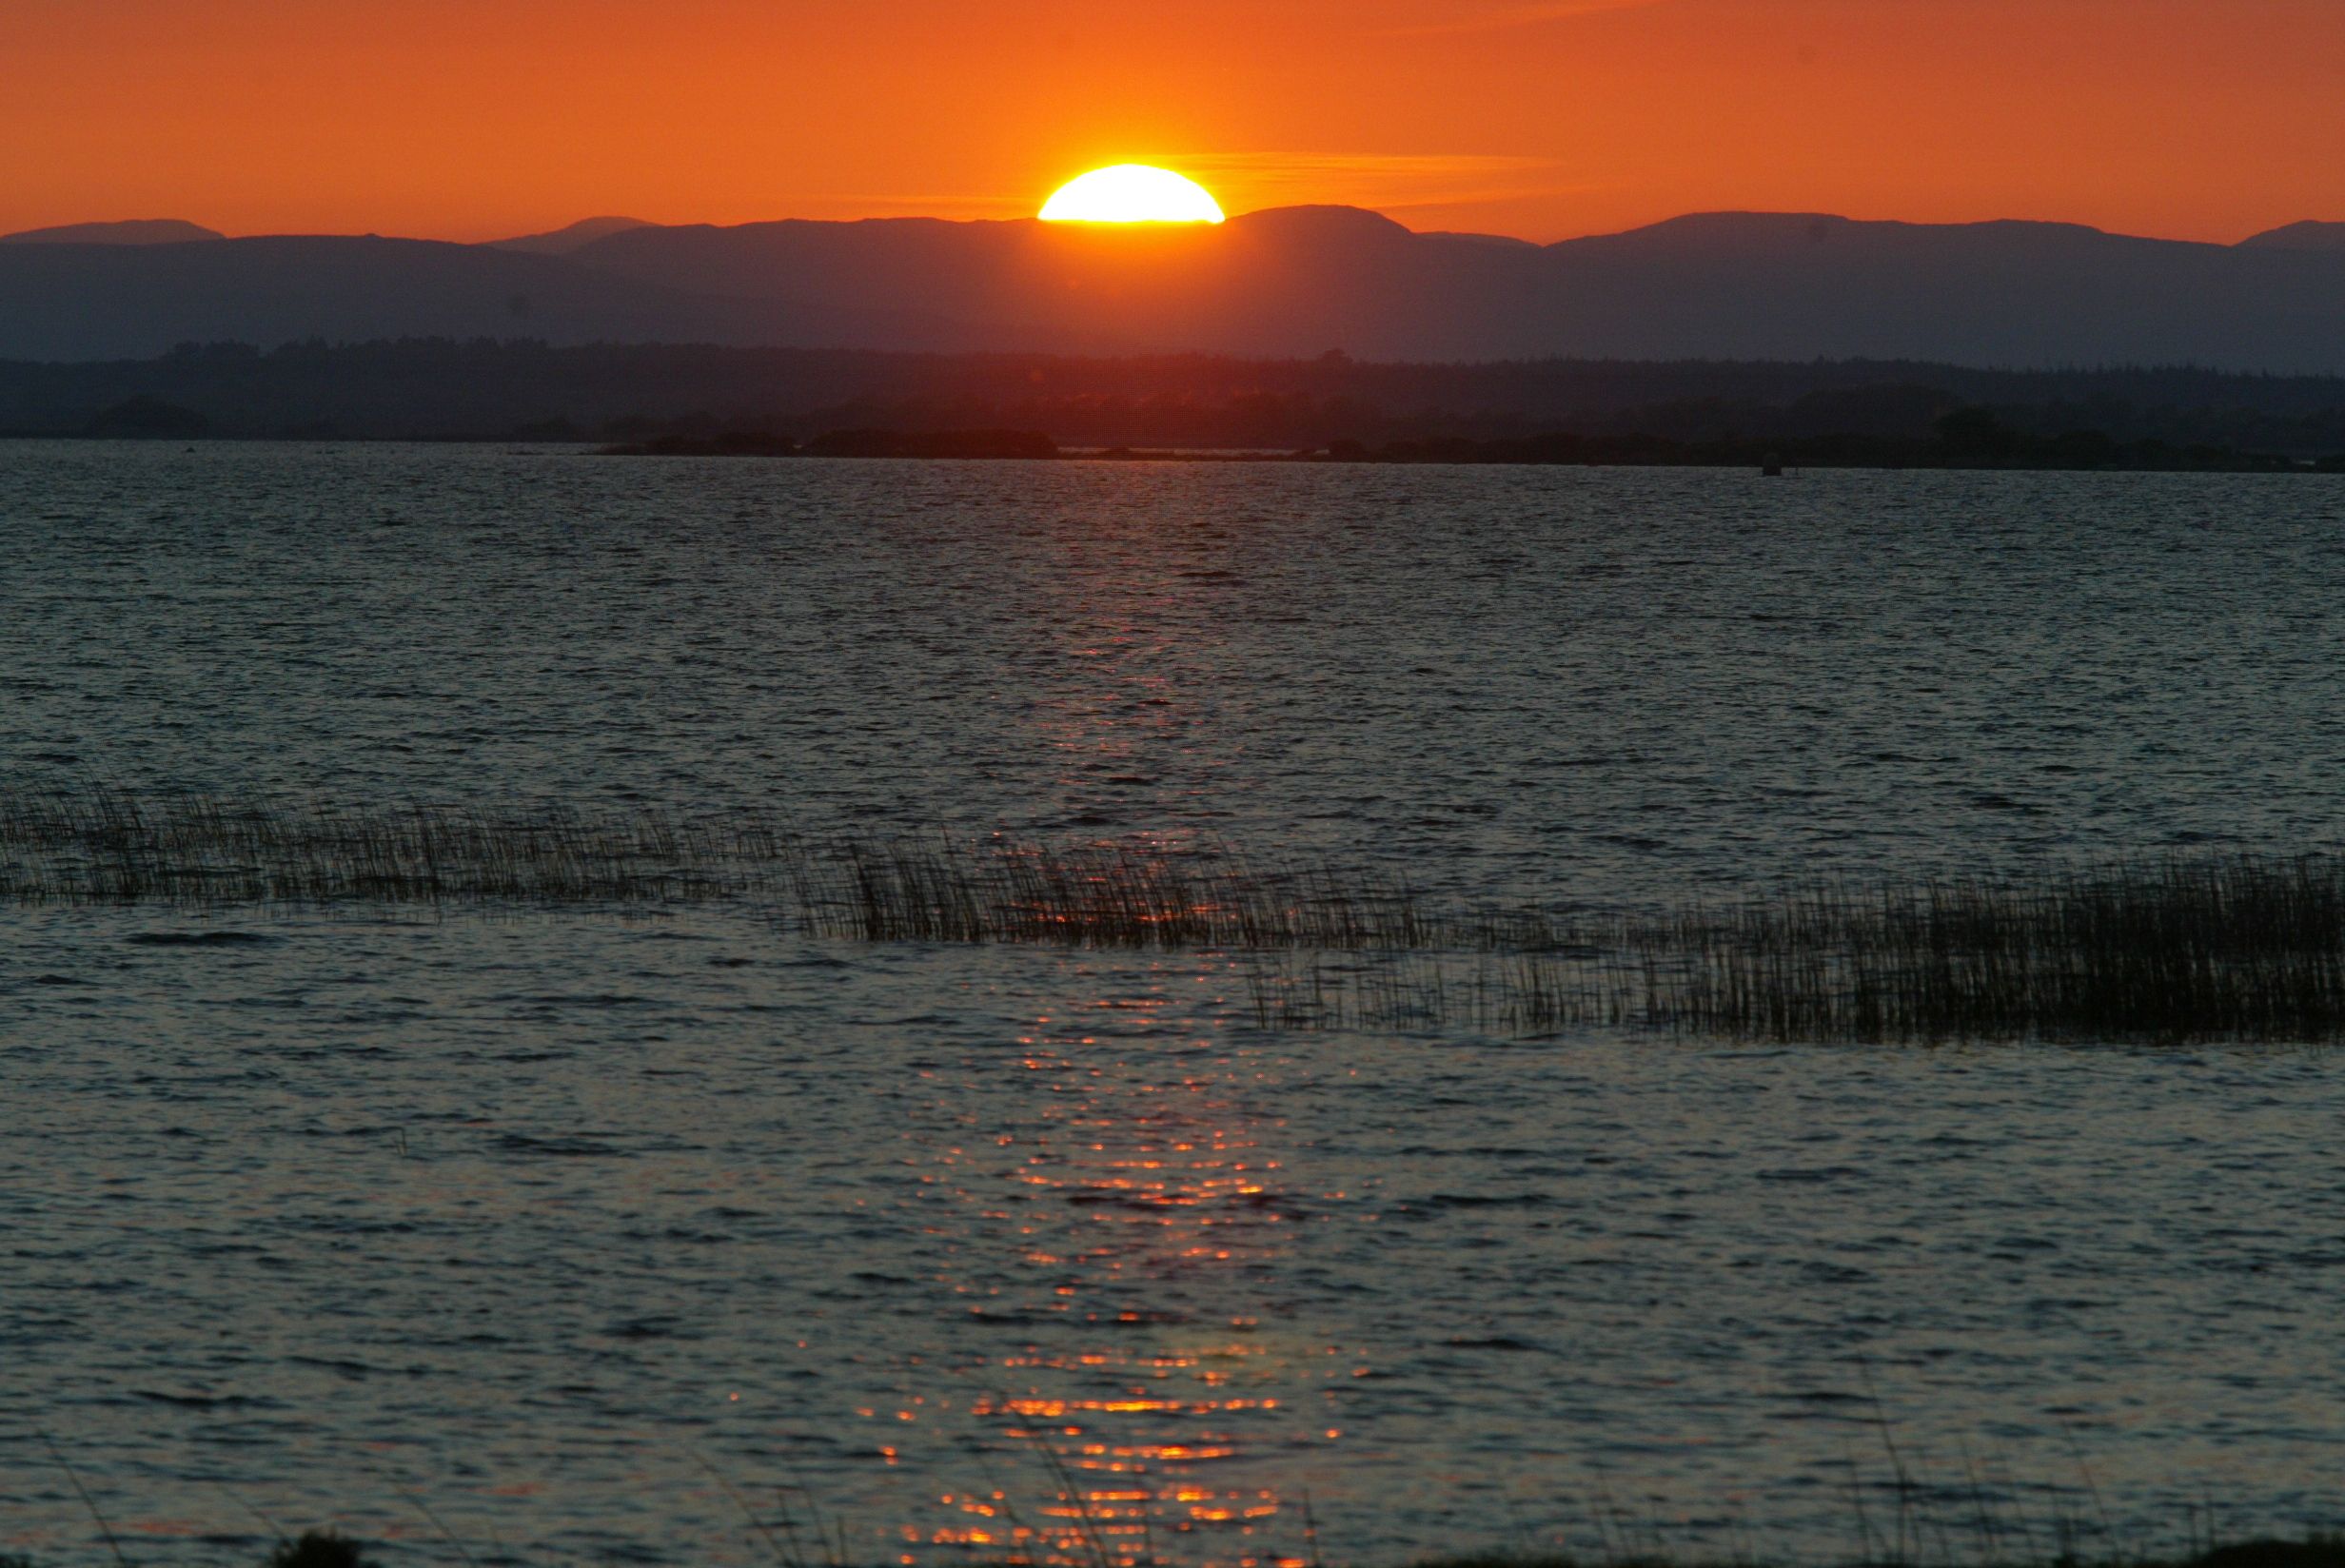 Sunset on Lough Corrib from Menlo.